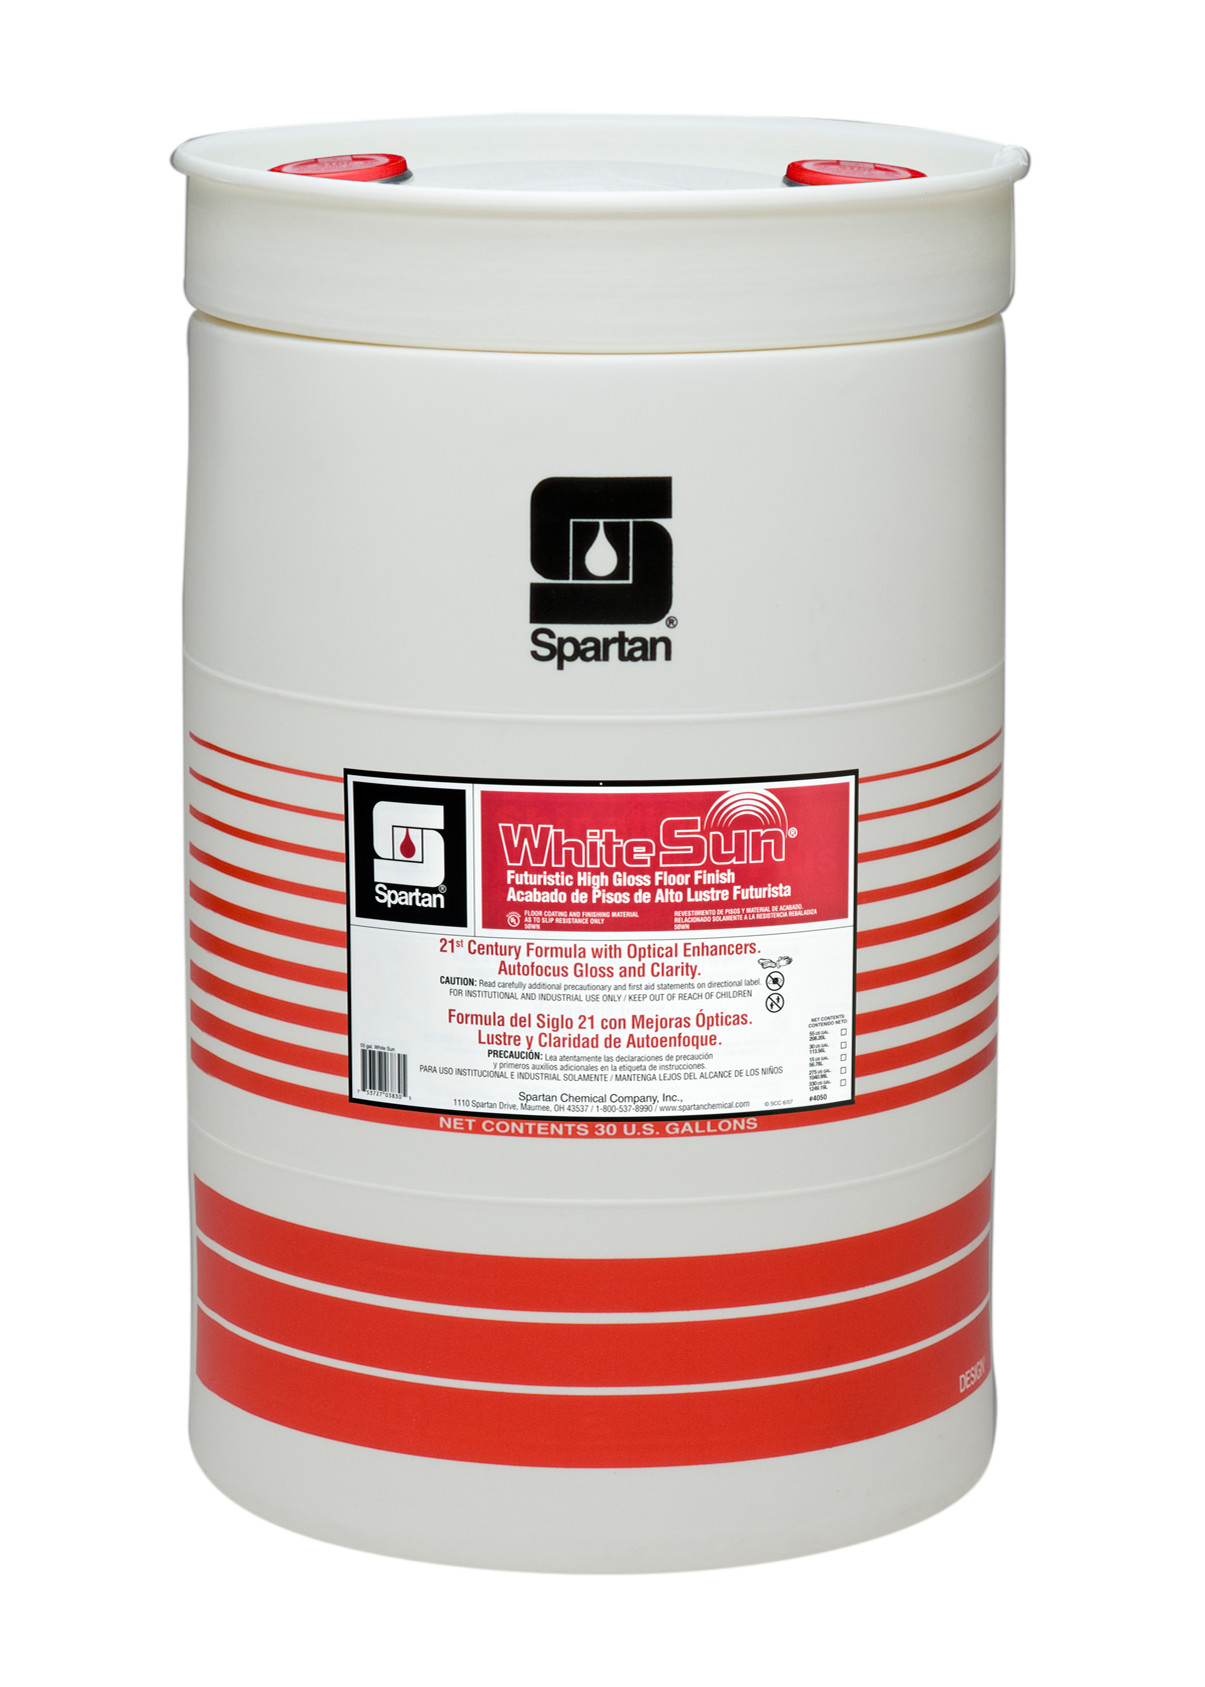 Spartan Chemical Company White Sun, 30 GAL DRUM